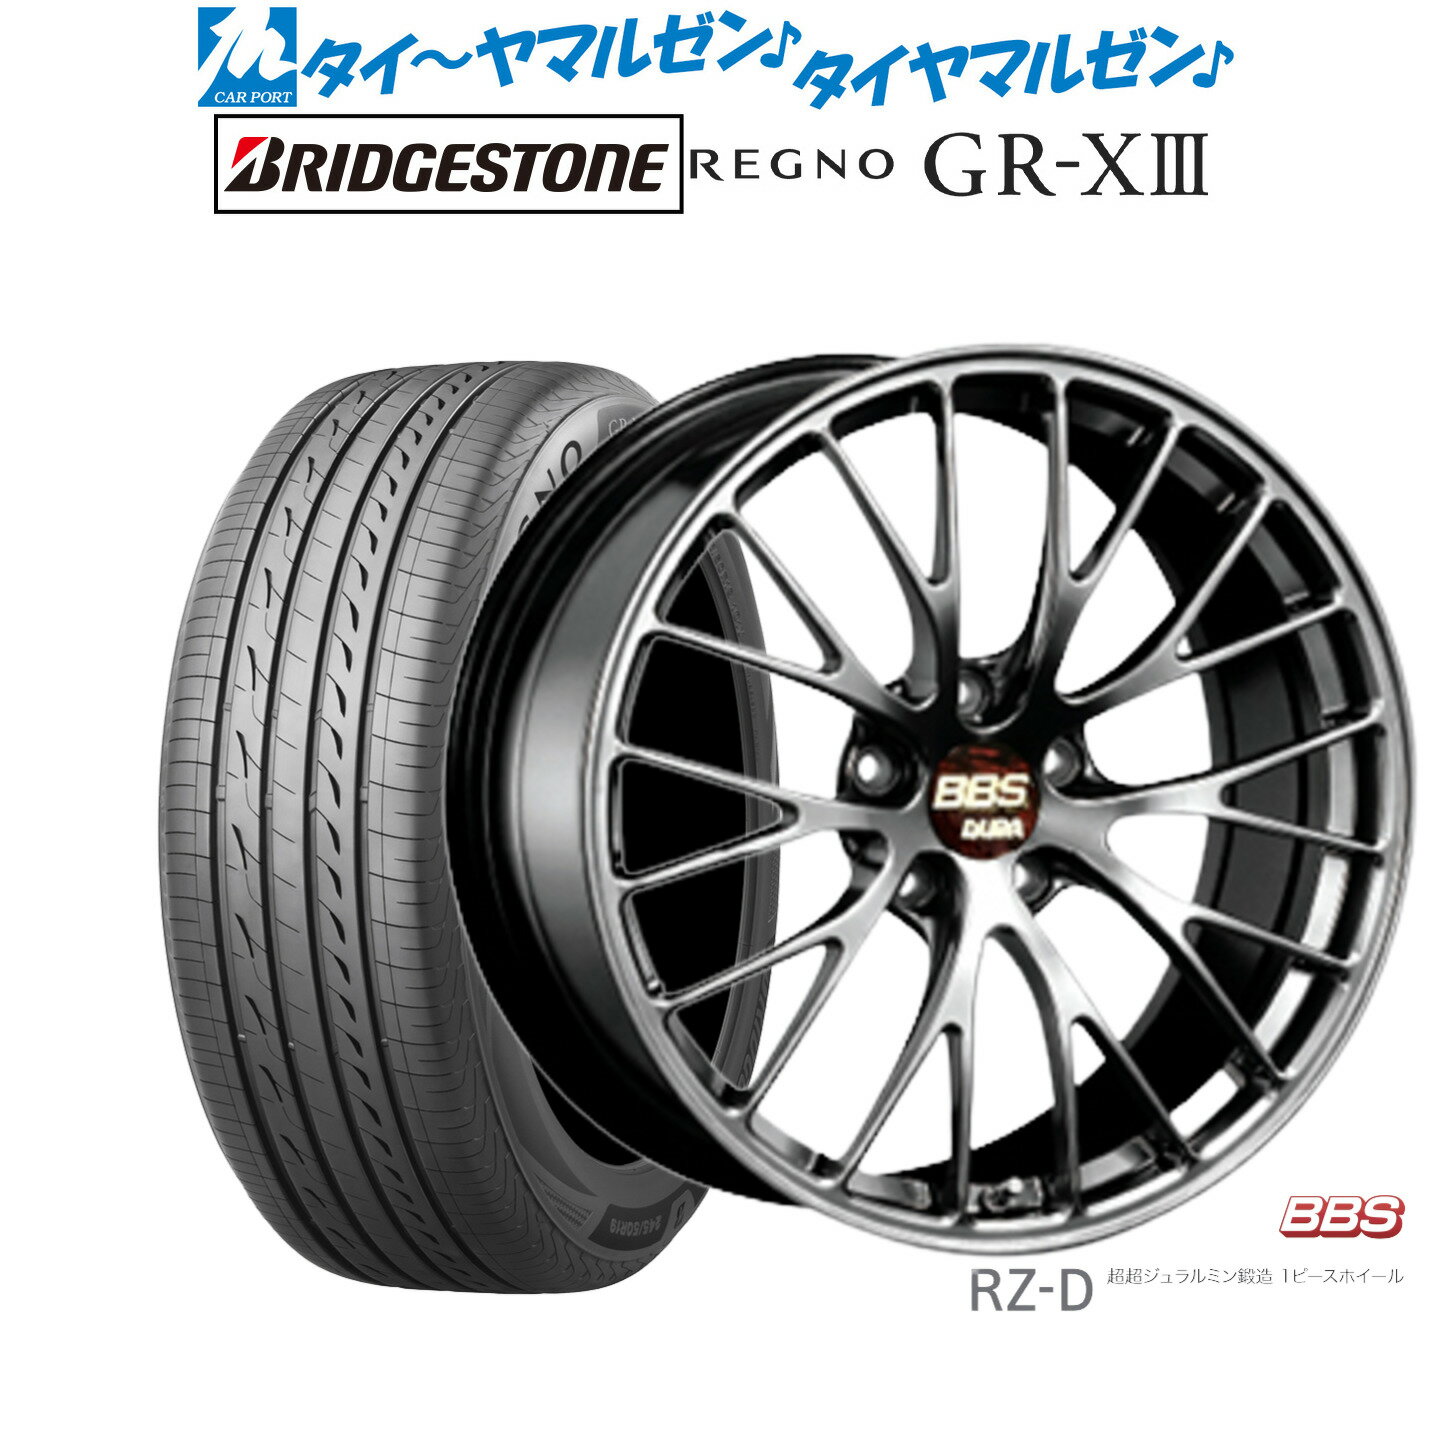 [5/18]ストアポイント3倍!!新品 サマータイヤ ホイール4本セットBBS JAPAN RZ-D20インチ 8.5Jブリヂストン REGNO レグノ GR-XIII(GR-X3)245/40R20